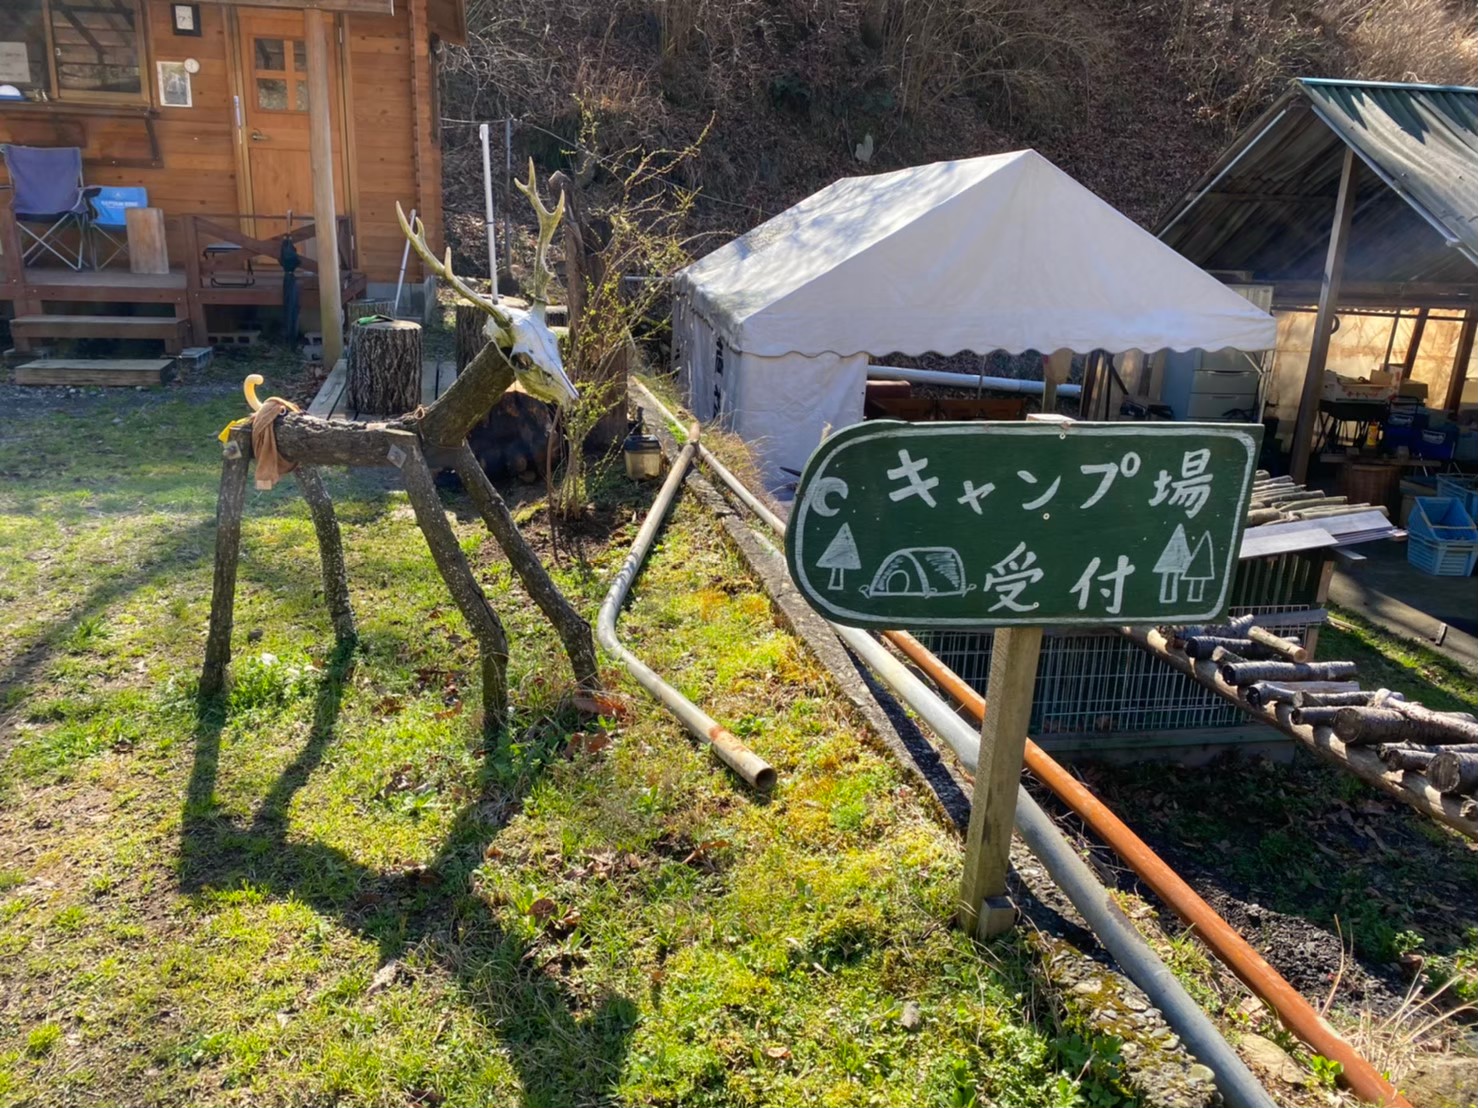 静岡県 伊豆 ドッグラン付き 伊豆自然村キャンプフィールド の情報まとめ 中部キャンプwalker